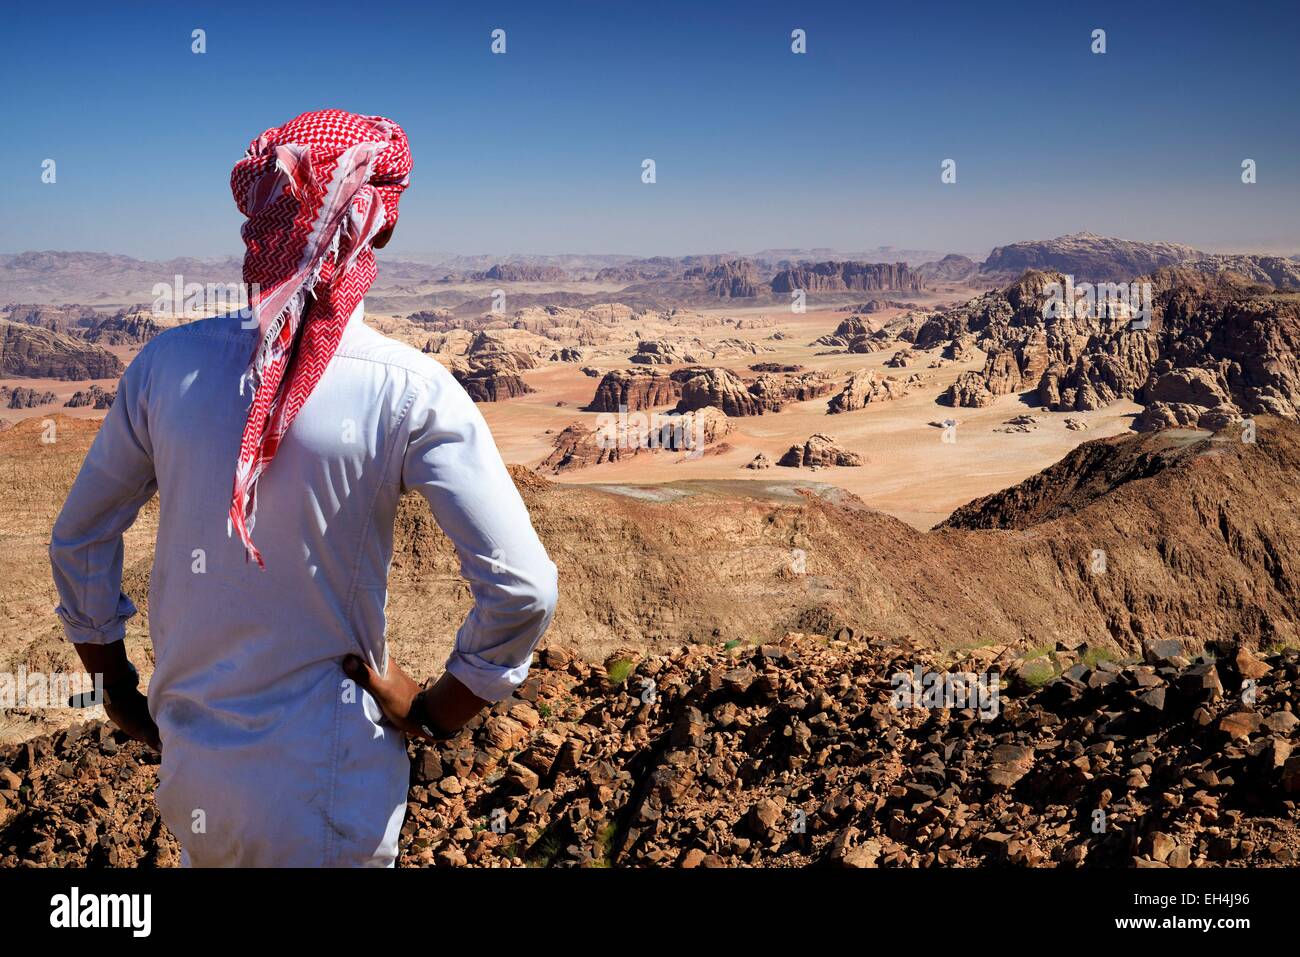 La Jordanie, Wadi Rum, frontière avec l'Arabie saoudite, bédouins et vue depuis le sommet du Djebel Umm Adaami (1832m), la plus haute montagne de la Jordanie Banque D'Images